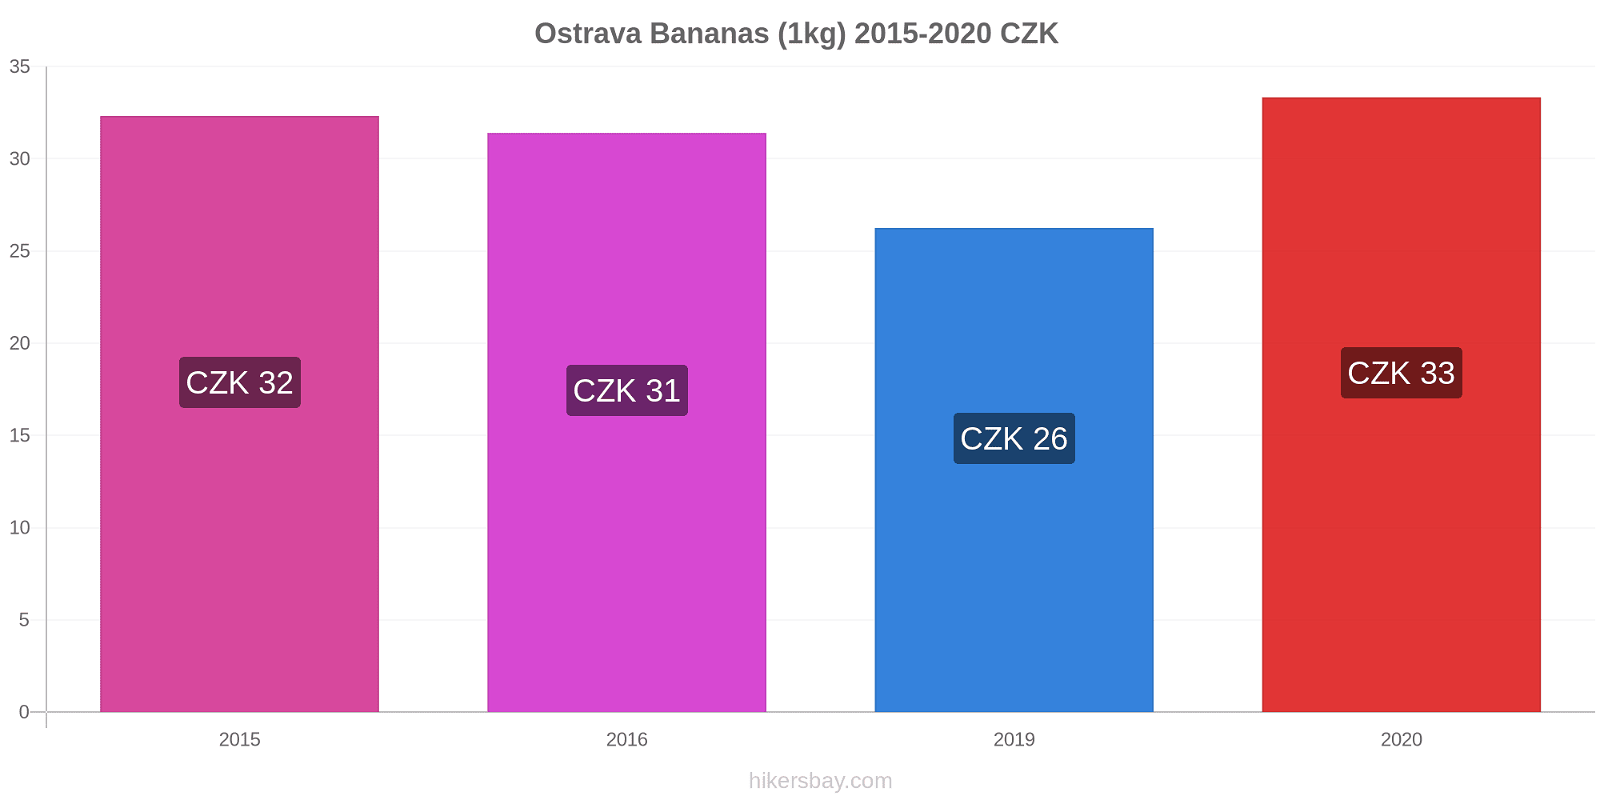 Ostrava price changes Bananas (1kg) hikersbay.com